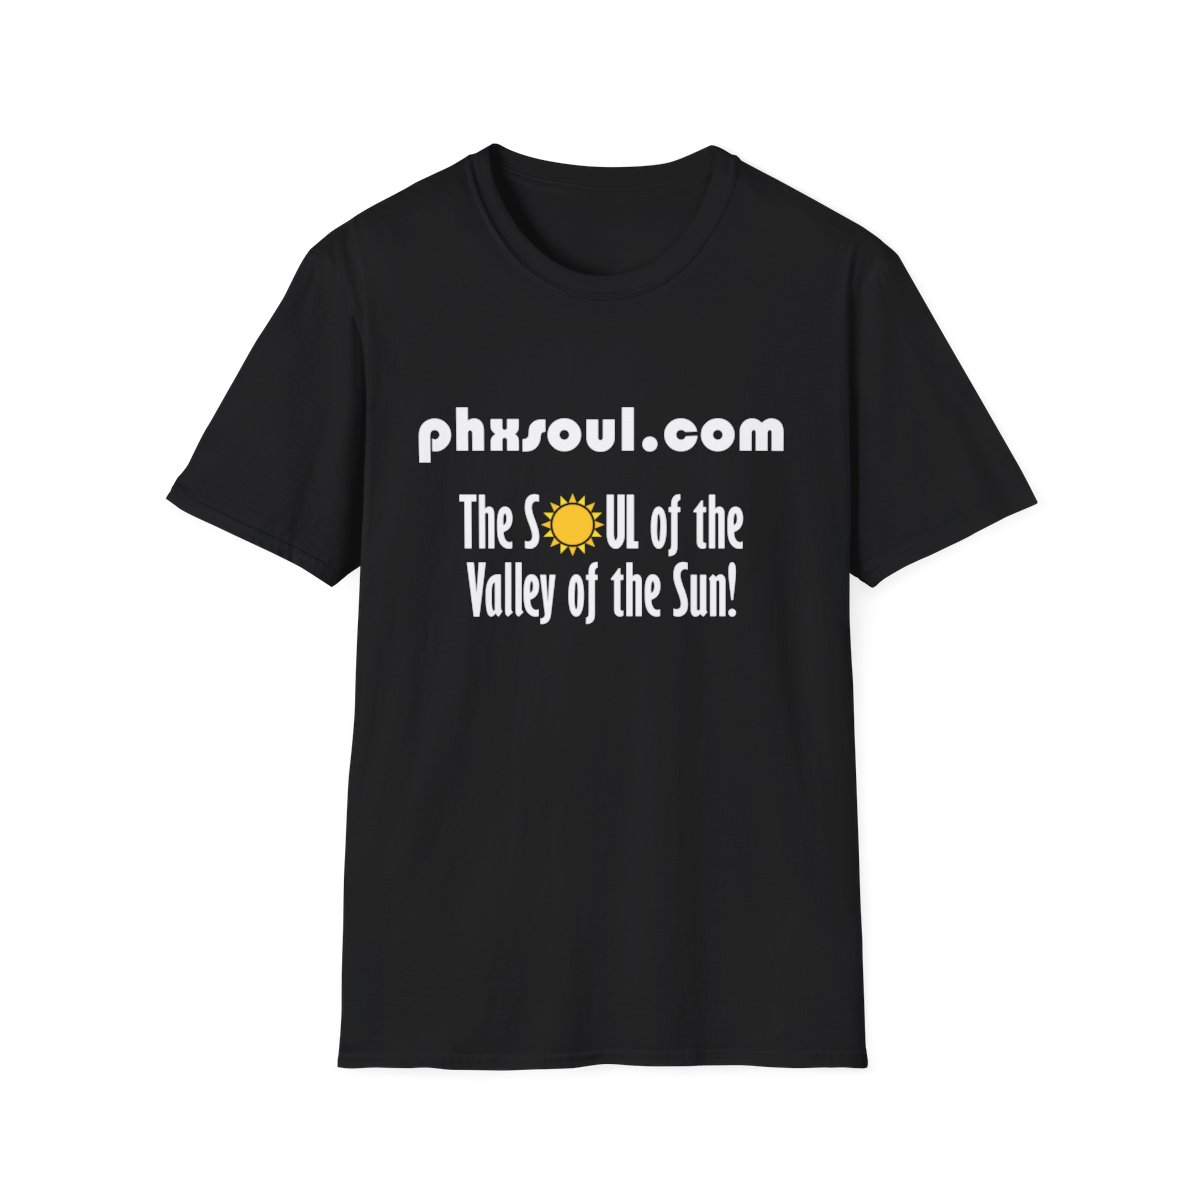 Adult PhxSoul.com Unisex Softstyle Black T-Shirt product main image